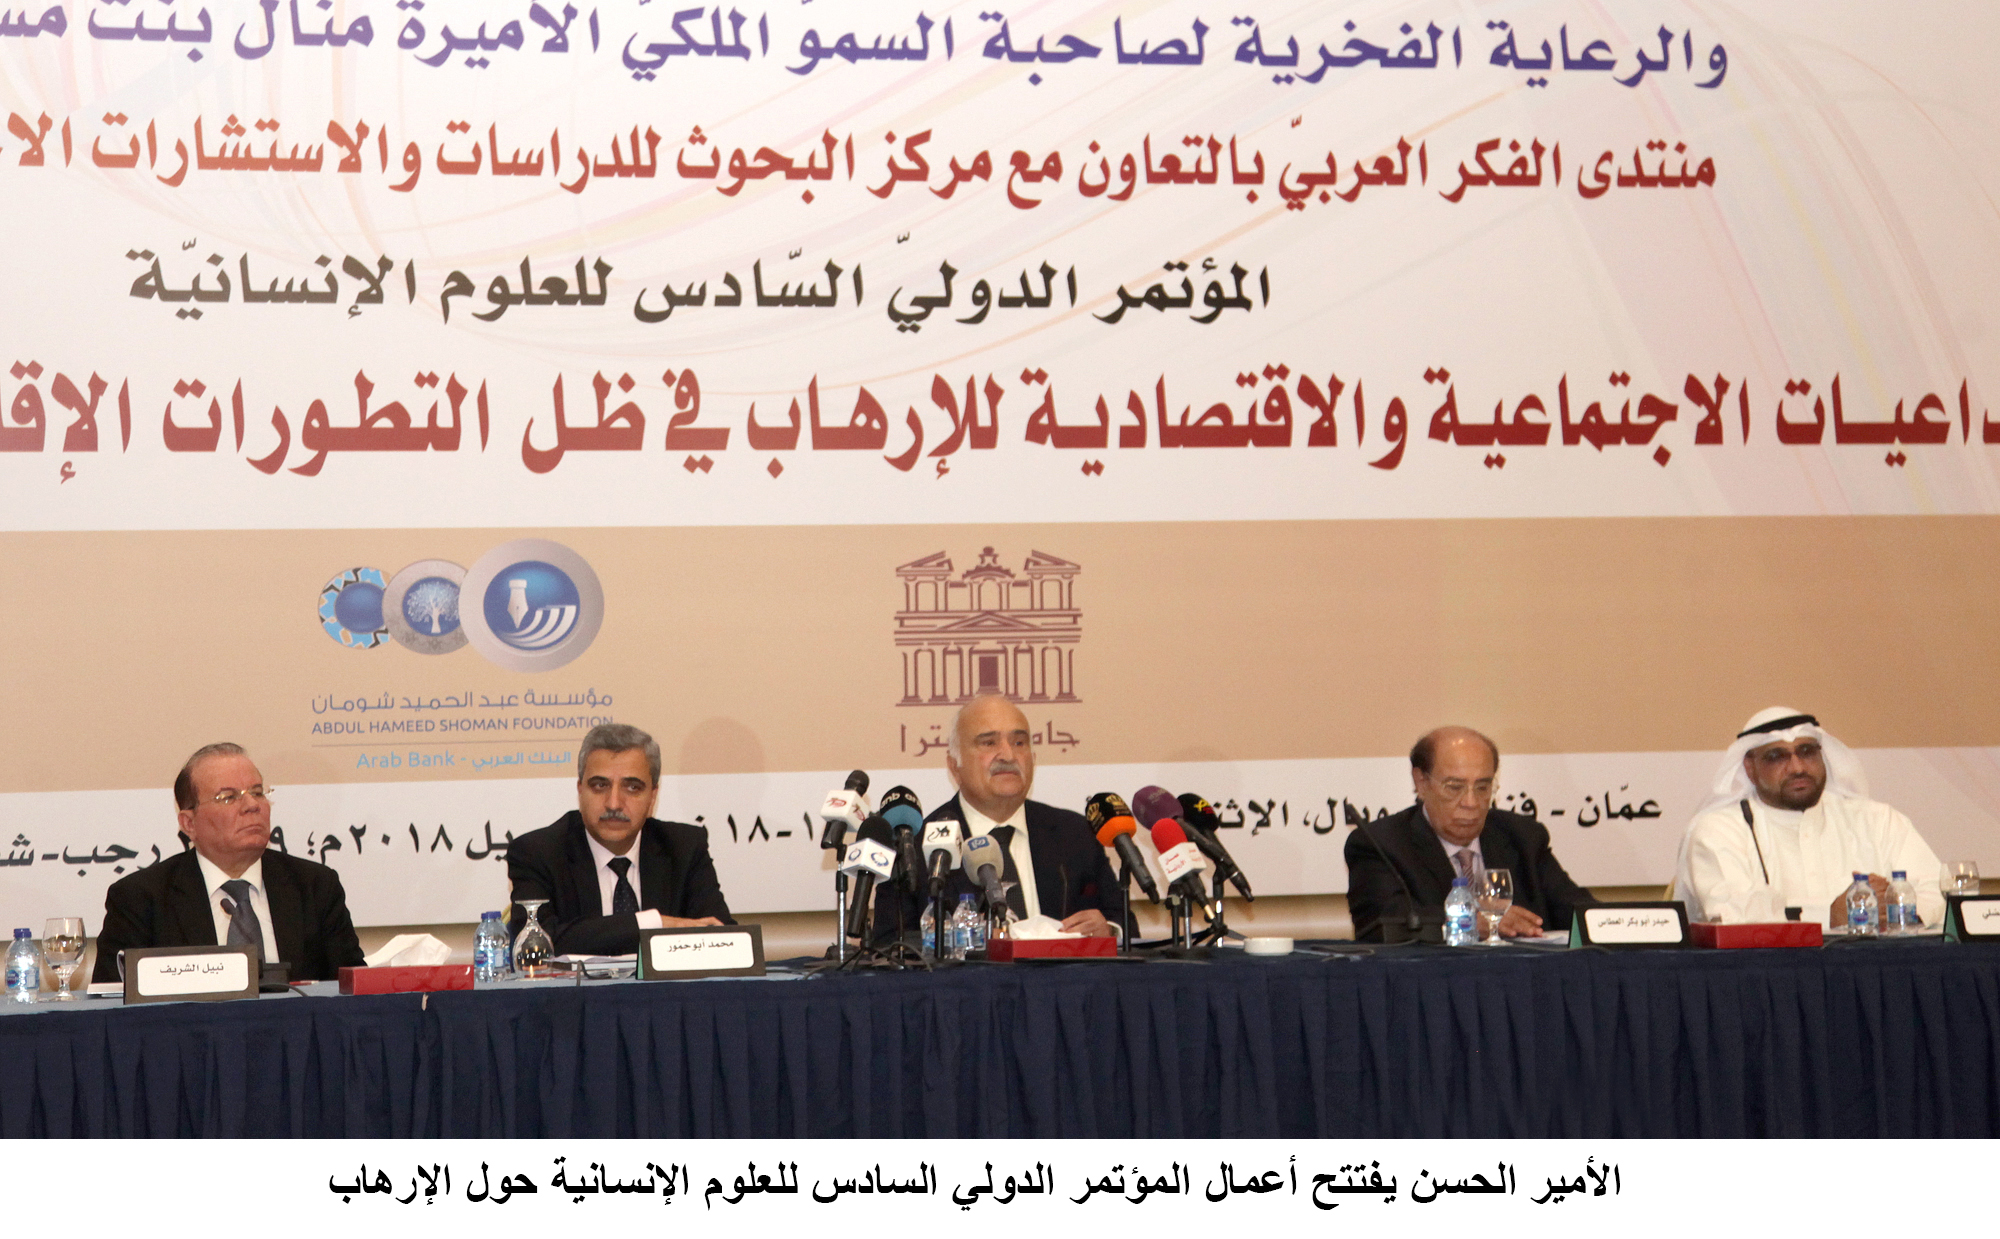 بالصور : الأمير الحسن يفتتح أعمال المؤتمر الدولي السادس للعلوم الإنسانية حول الإرهاب